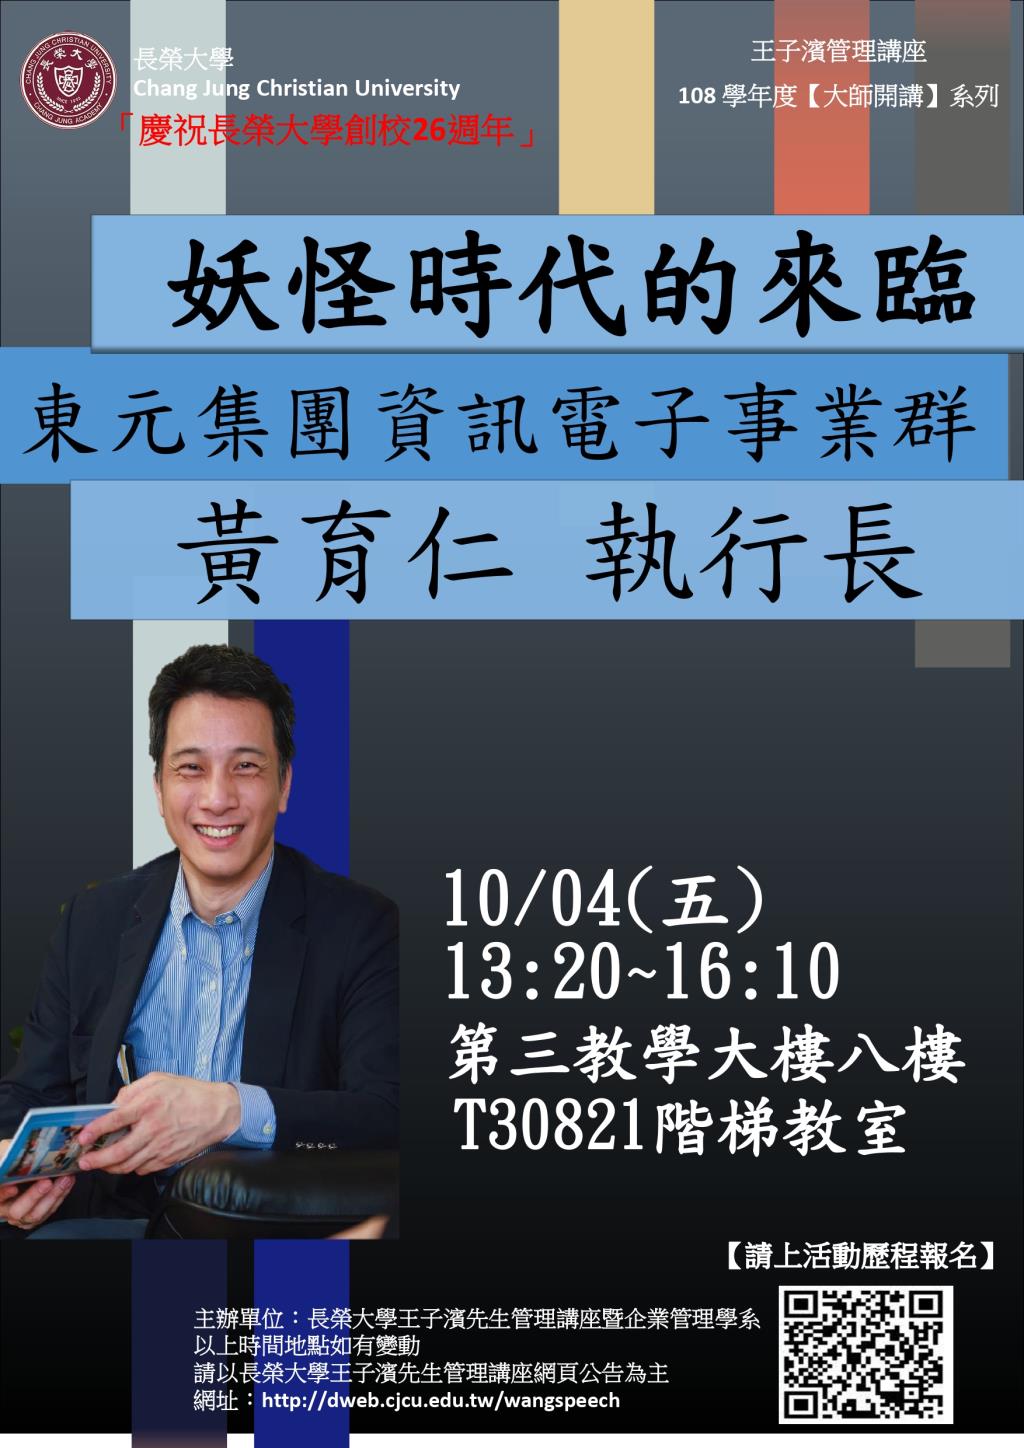 敬邀參加本週五下午(10/04)王子濱先生管理講---東元集團資訊電子群 黃育仁執行長